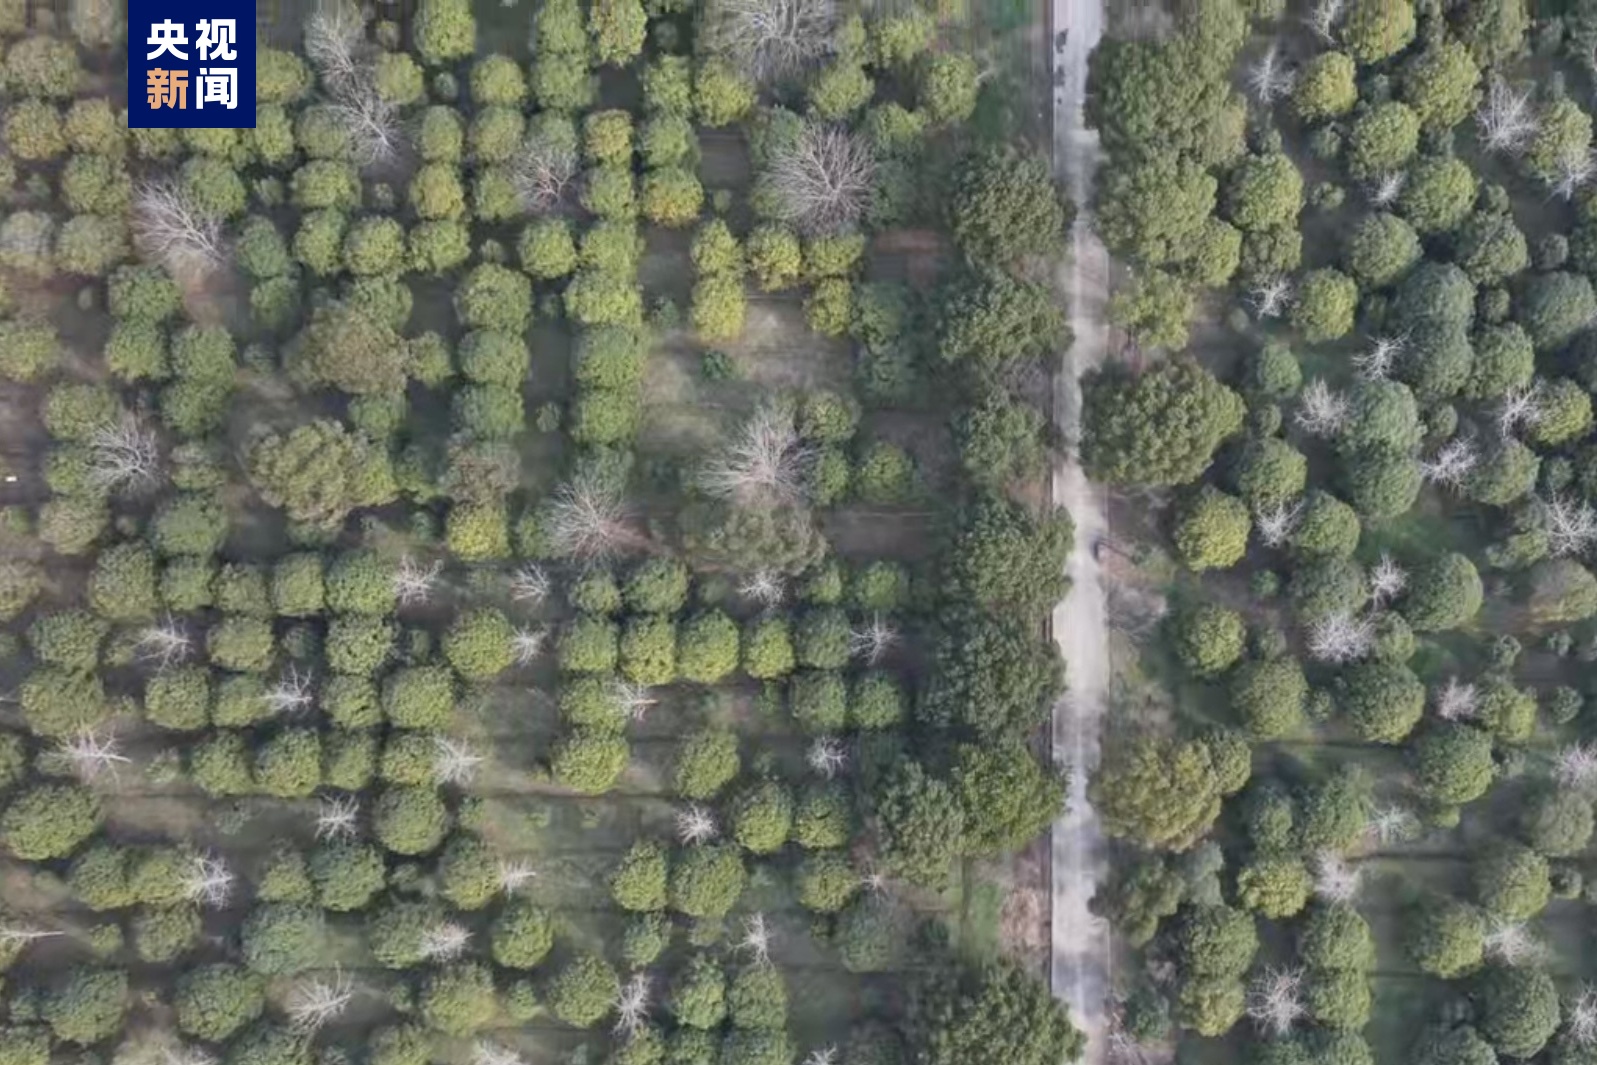 2023年上海新增森林面积6.7万亩 众方法为公家负担植树供应便当